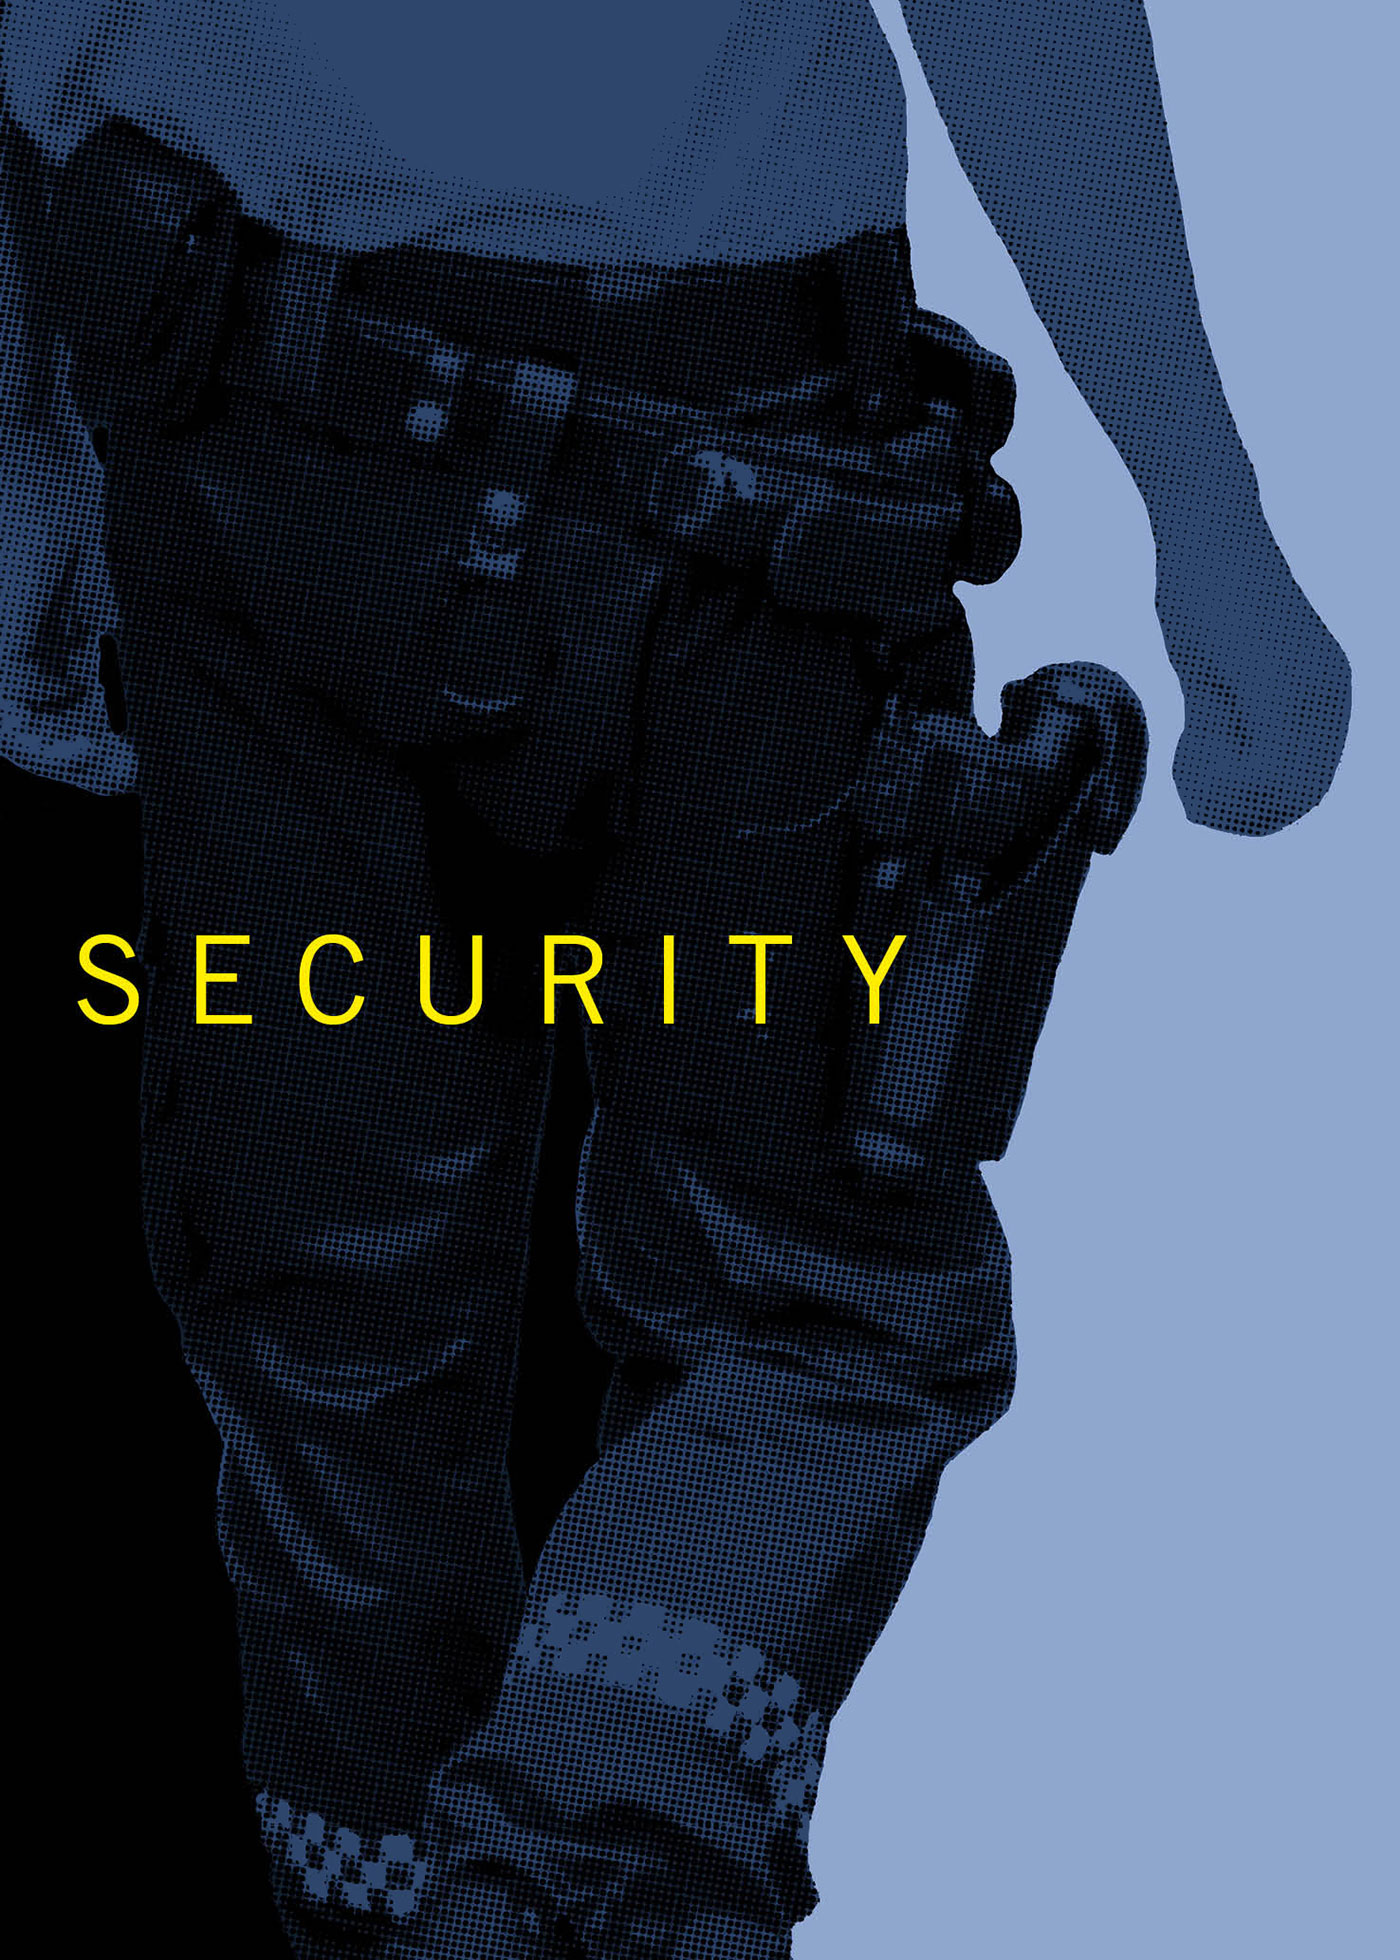 kristoffer_holen_security